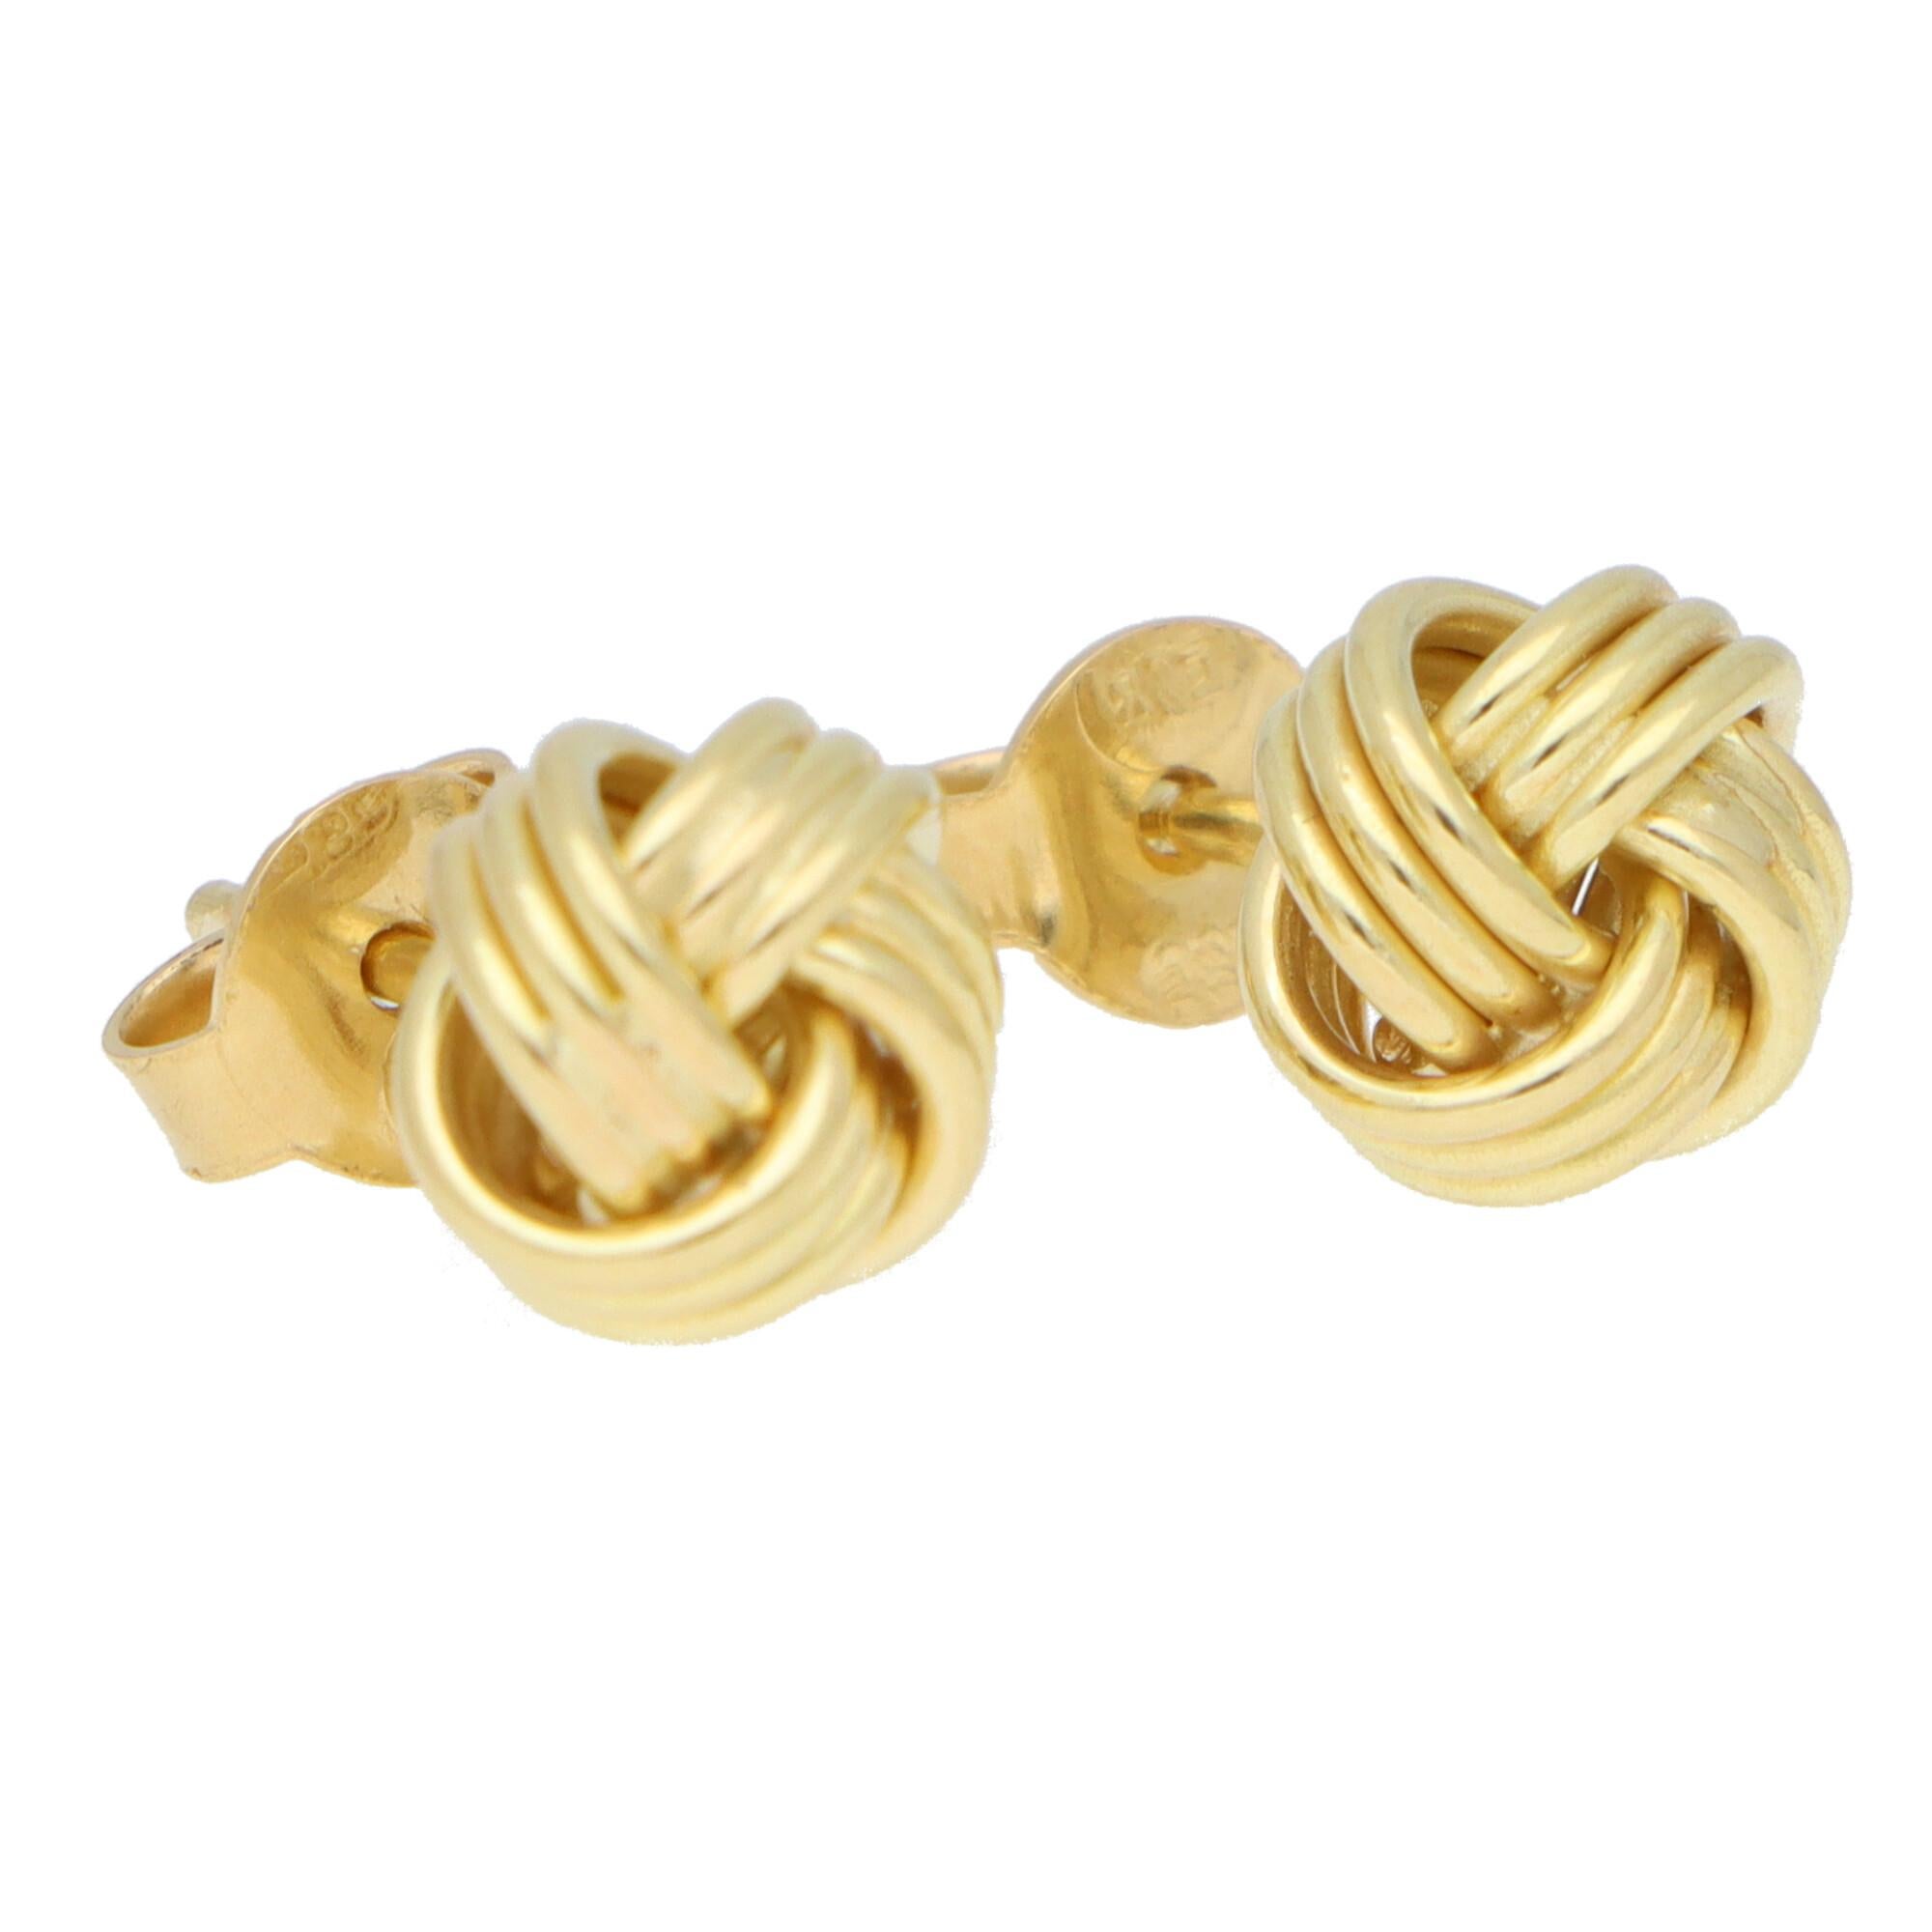 Modern Woven Knot Stud Earrings Set in 18k Yellow Gold